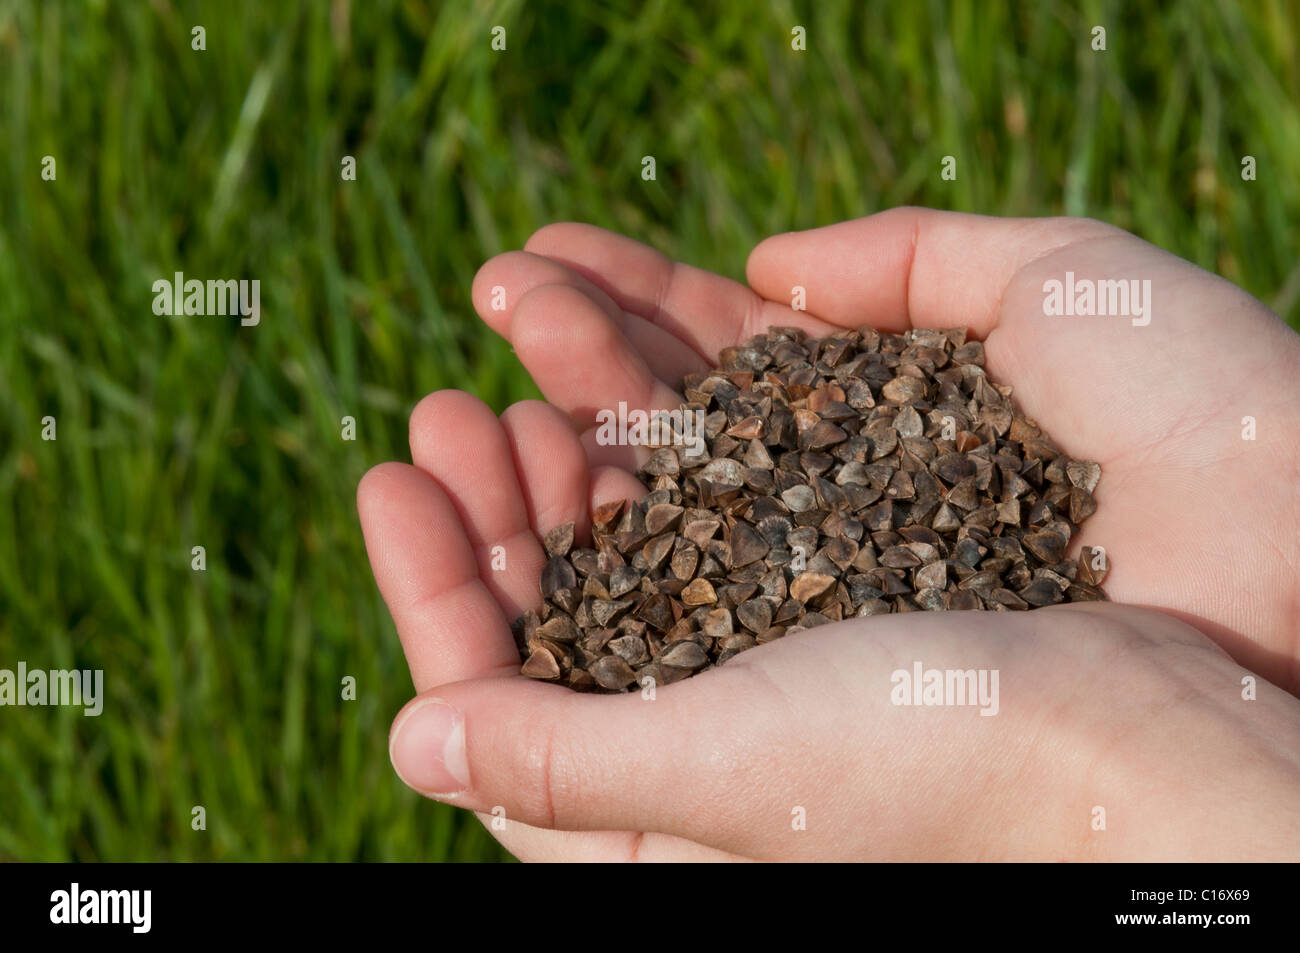 Bambino azienda semi di grano saraceno , agricoltura biologica close-up Foto Stock